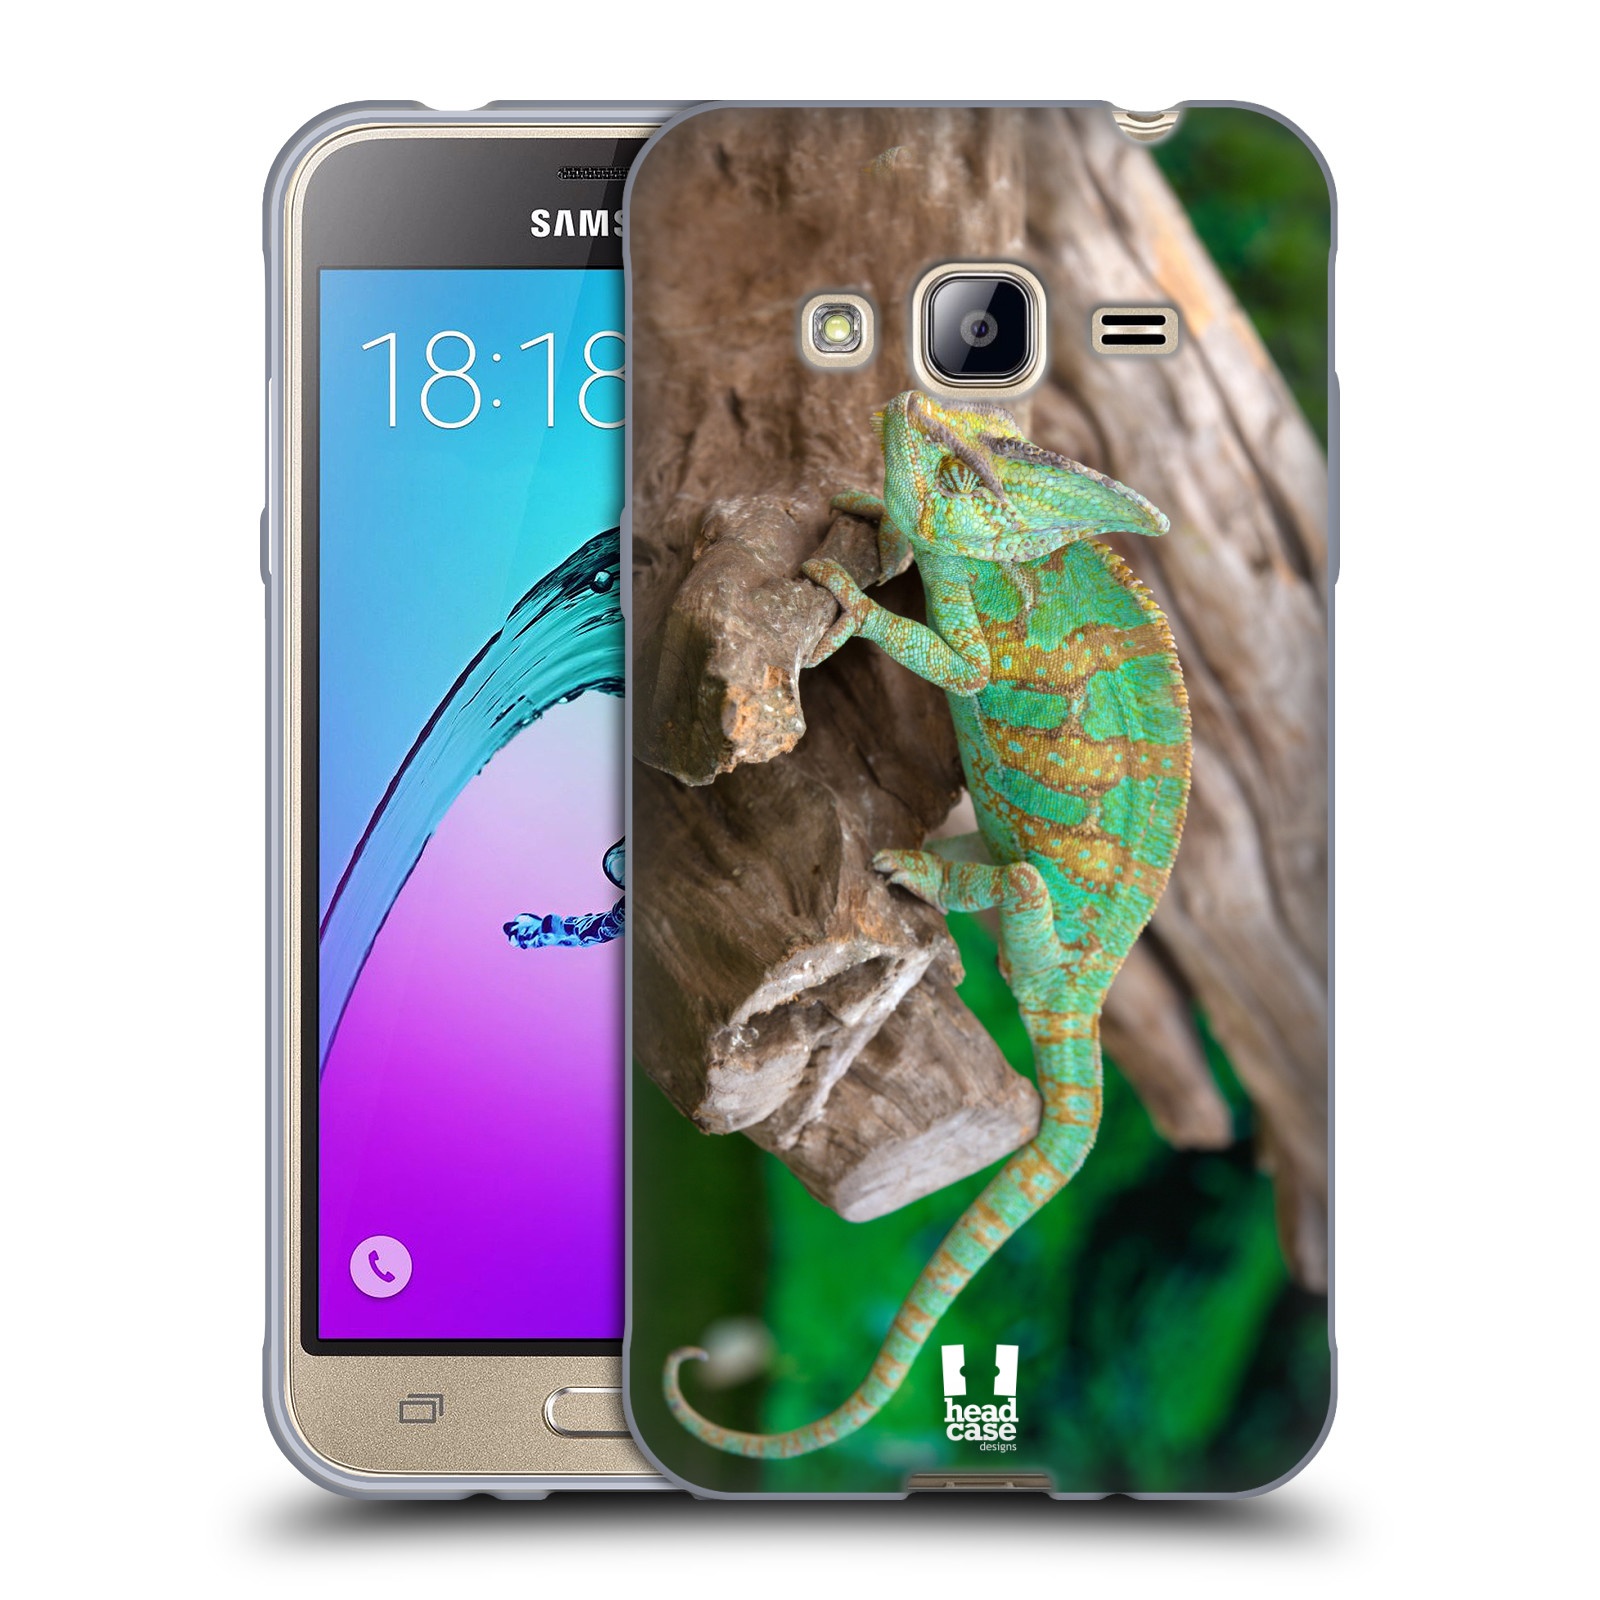 HEAD CASE silikonový obal na mobil Samsung Galaxy J3, J3 2016 vzor slavná zvířata foto chameleon